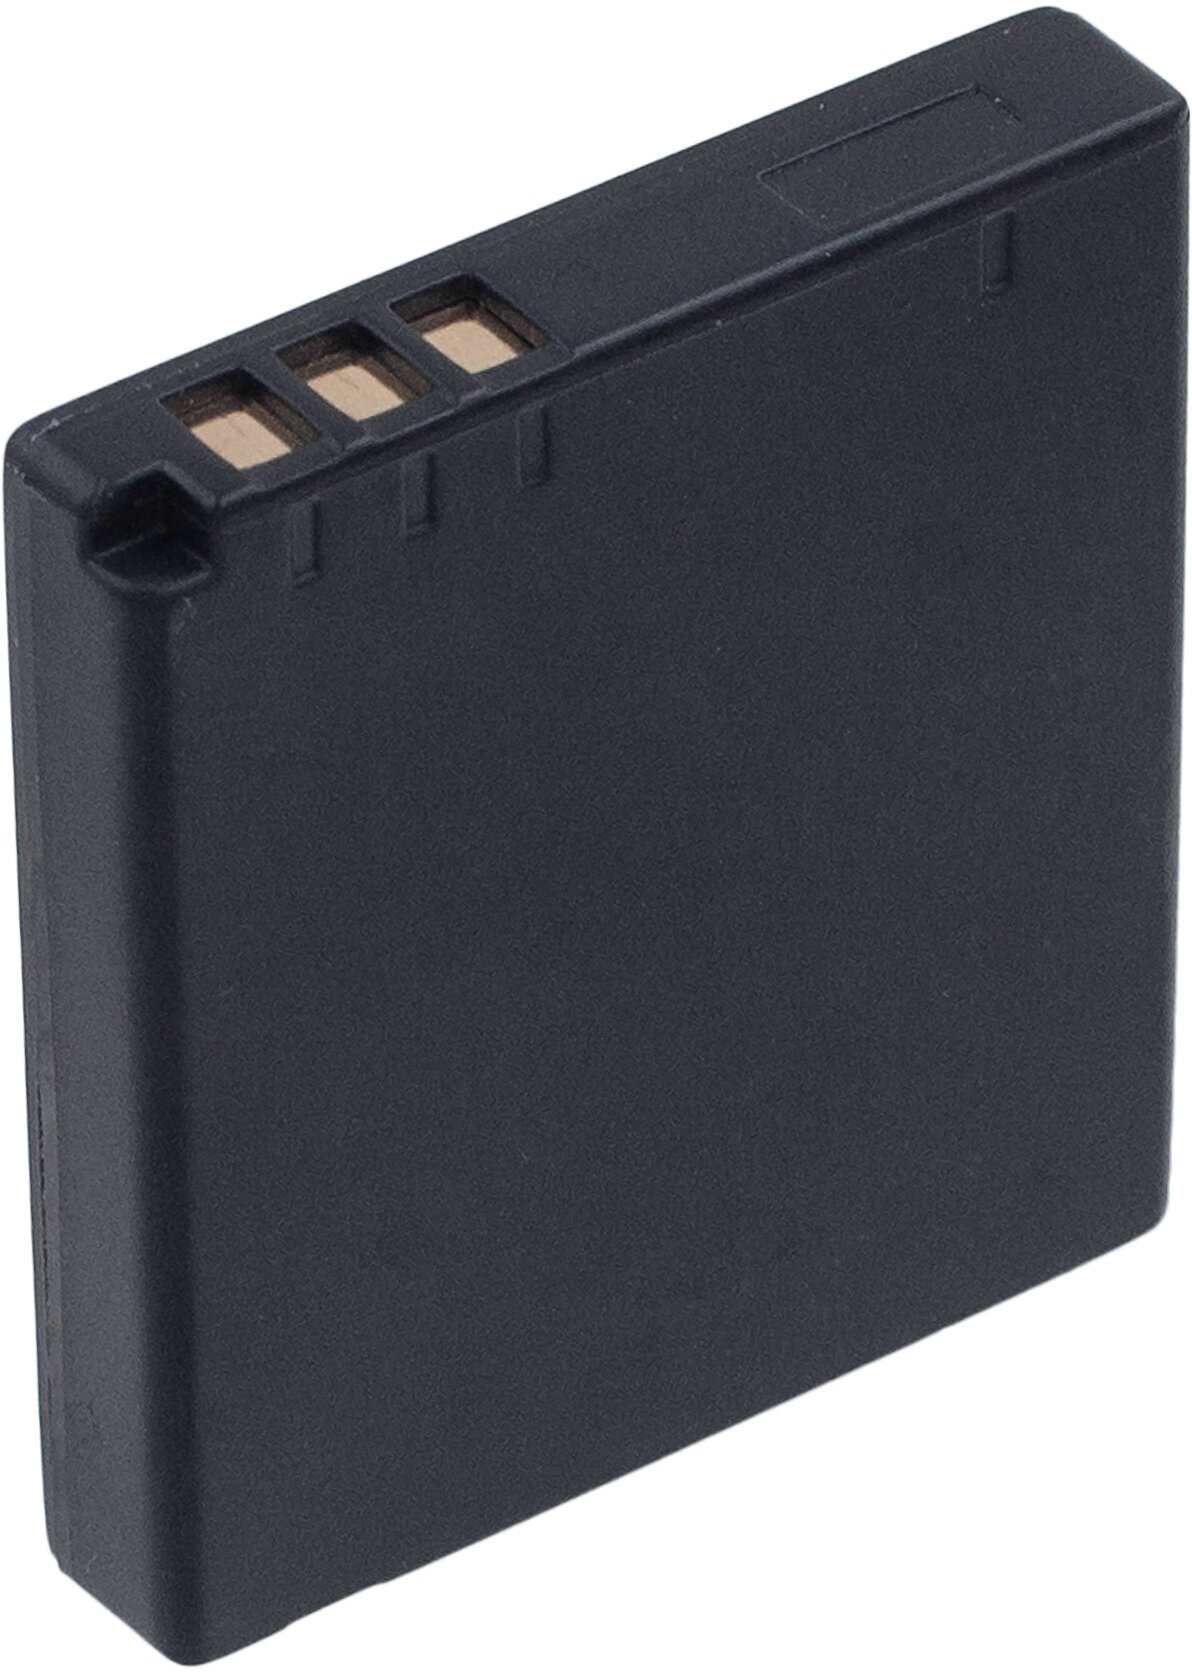 Аккумулятор DB-70 для Panasonic SDR-S26 | DMC-FS3 | SDR-SW20 | SDR-S7 | HM-TA1 - 1100mah